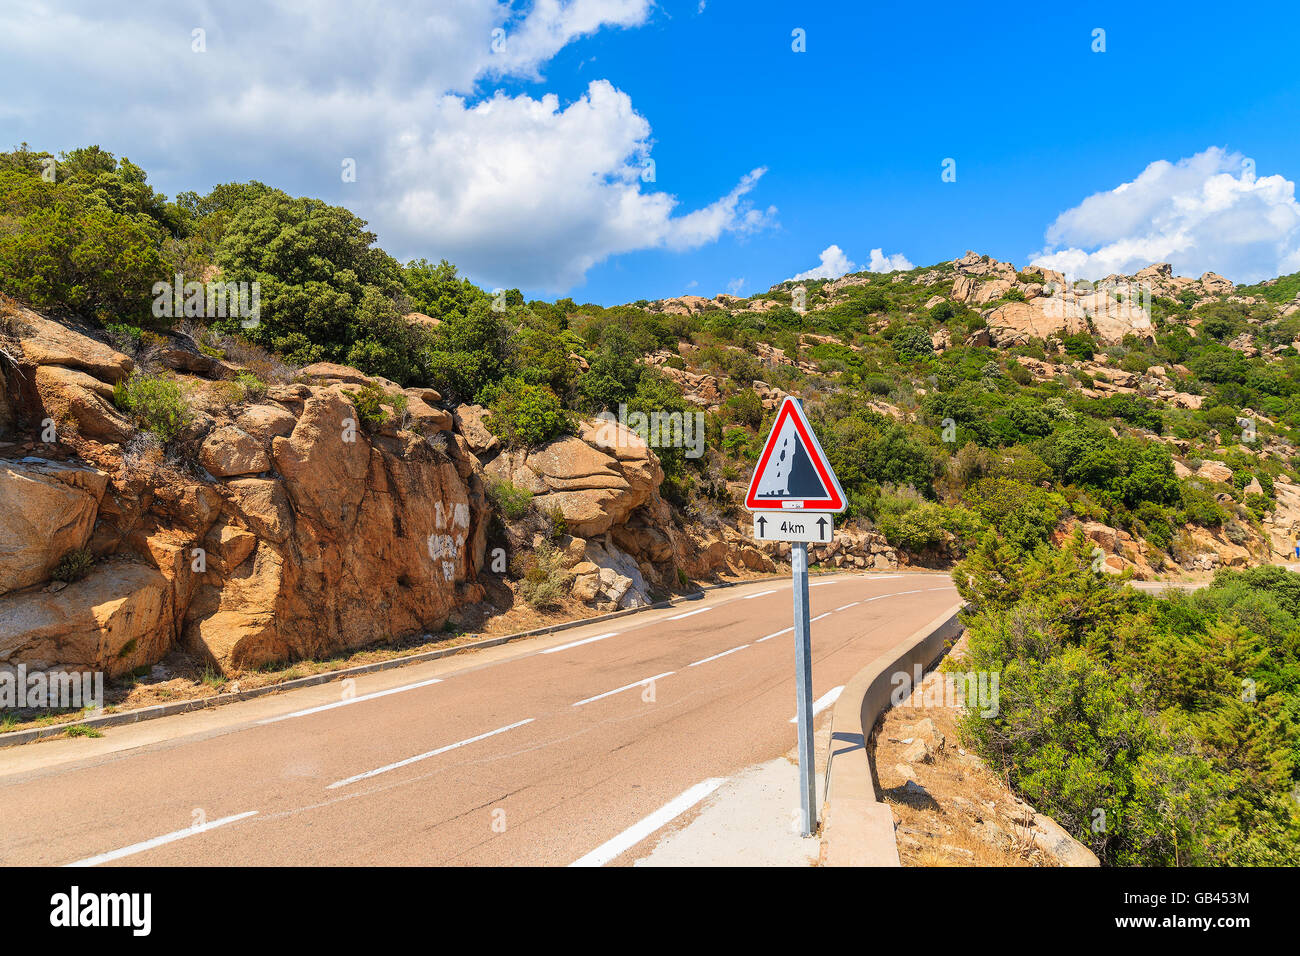 Scenic Route de montagne au milieu des rochers sur l'île de Corse, France Banque D'Images